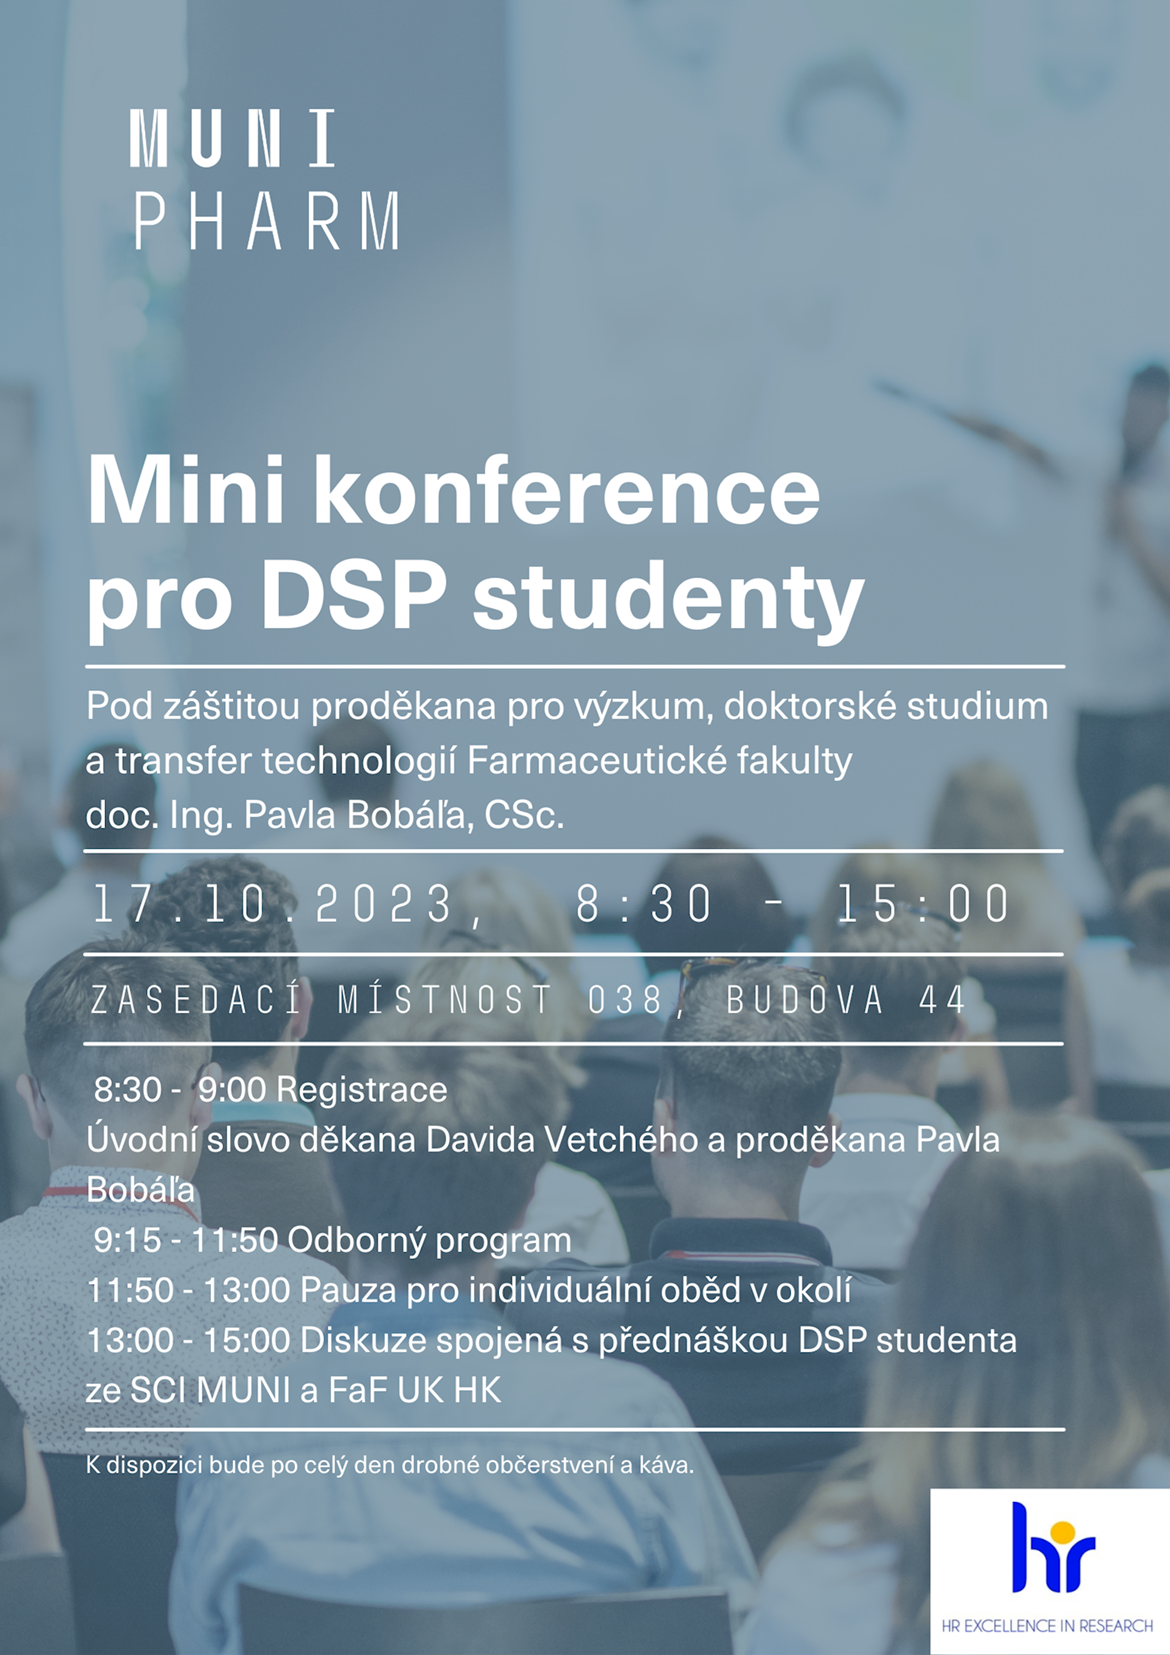 https://www.pharm.muni.cz/kalendar-akci/minikonference-dsp